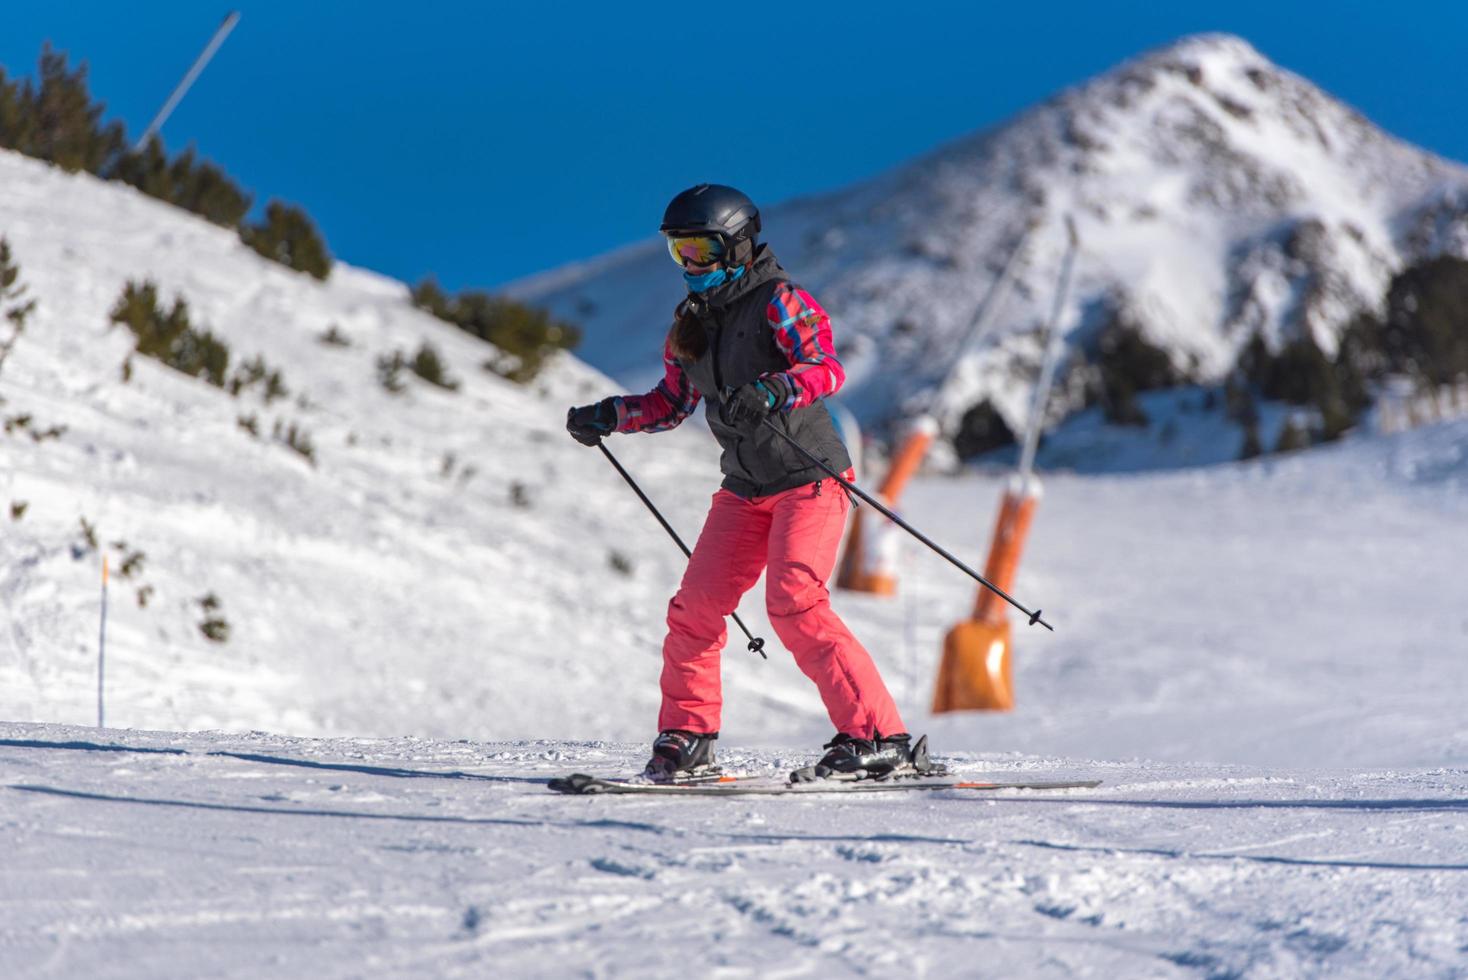 grandvalira, andorre. 11 décembre 2021 jeune femme skiant dans les pyrénées à la station de ski de grandvalira en andorre en temps de covid19 photo